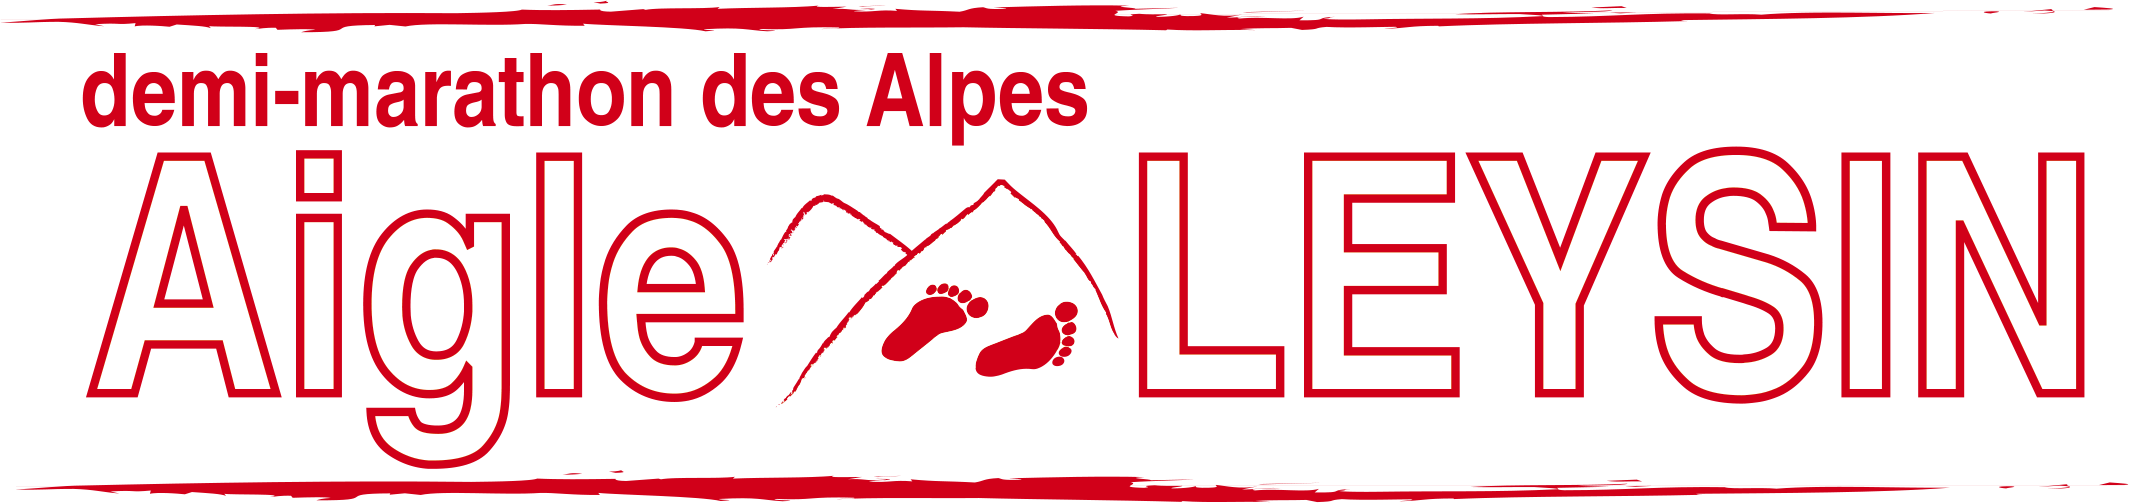 31. Demi-marathon des Alpes Aigle-Leysin